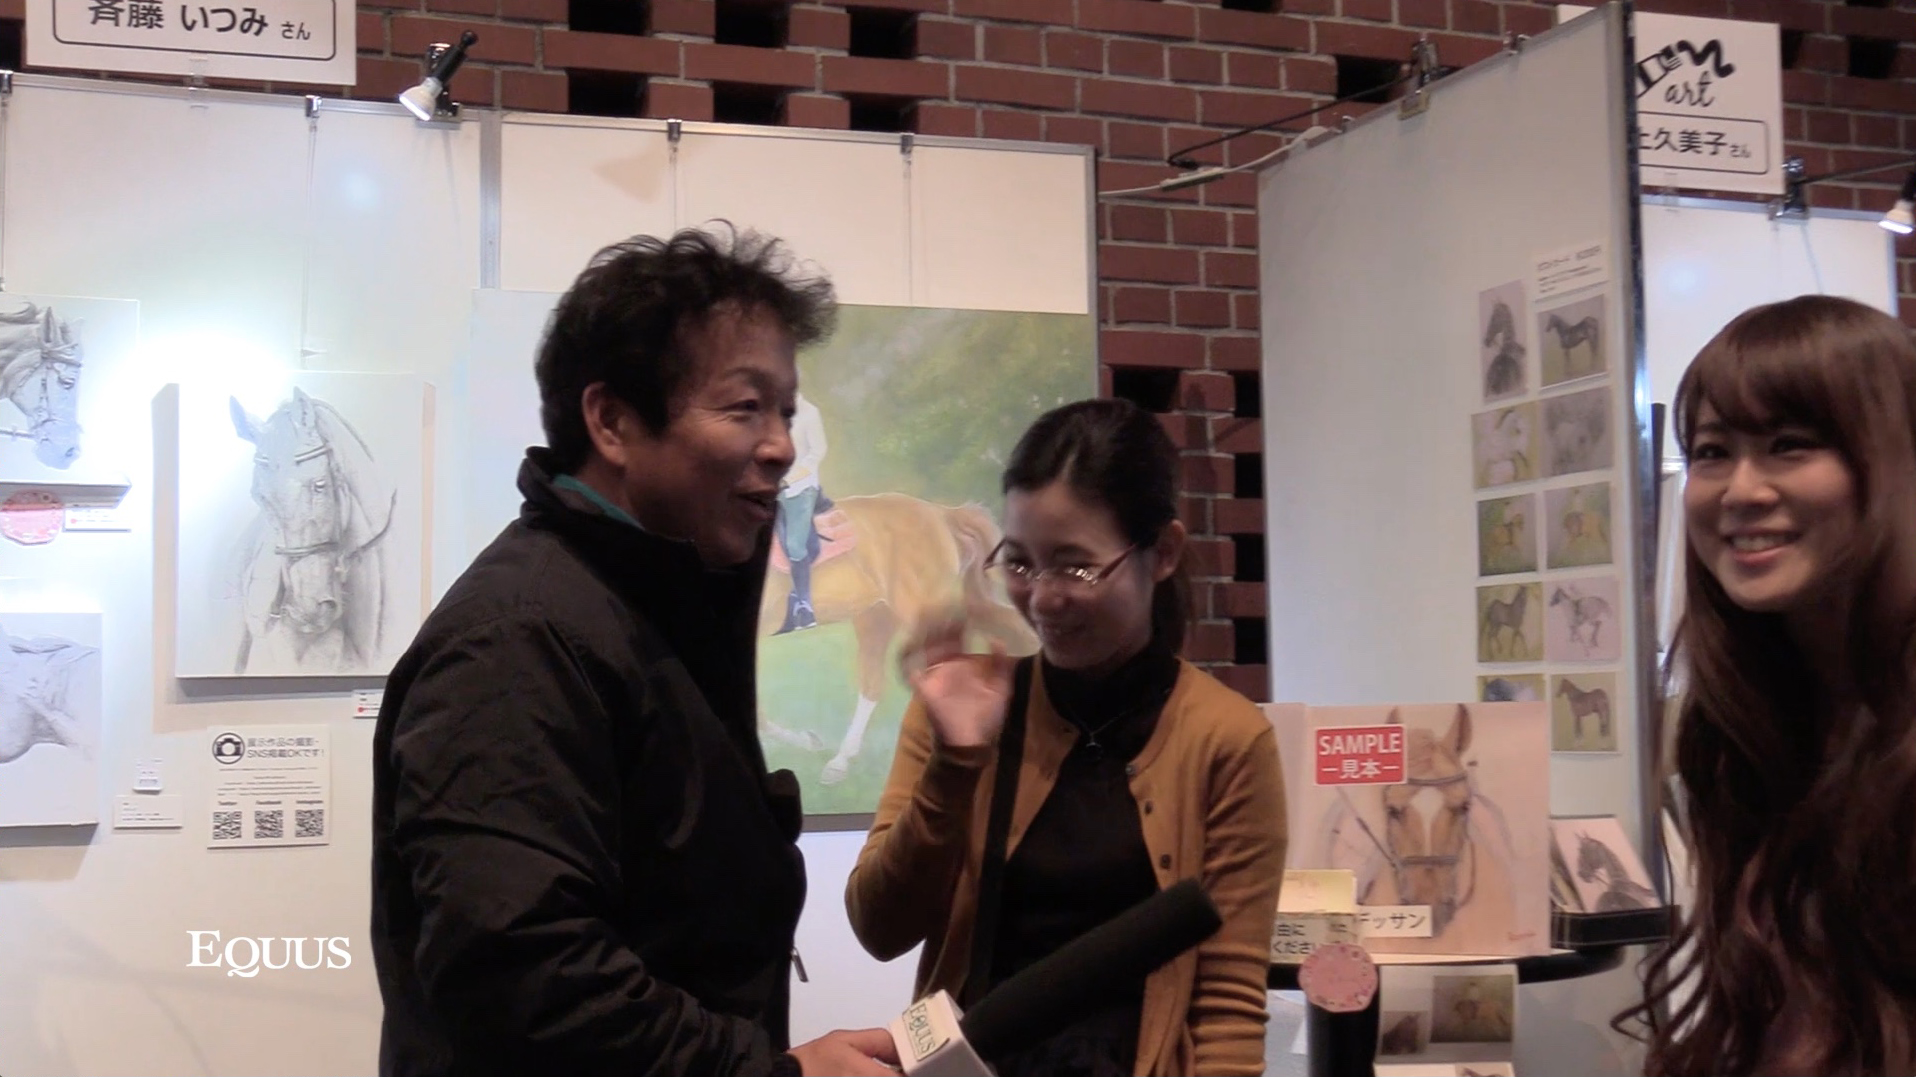 馬を描く二人の画家、斉藤いつみさん、阪上久美子さんのホースメッセ出店レポート